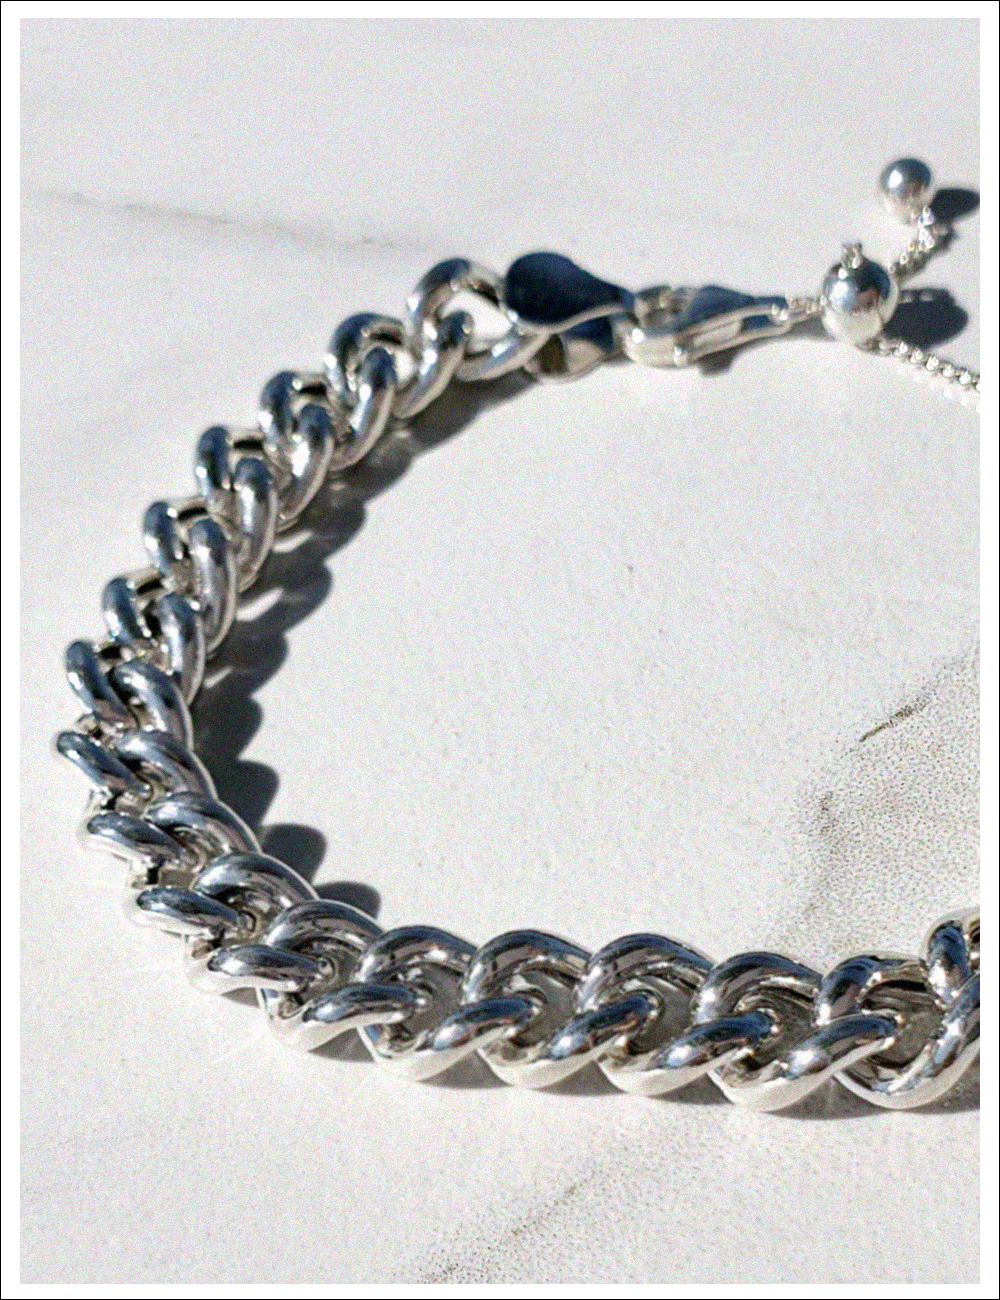 럭셔리 볼드 체인 팔찌(Luxury Bold Chain Bracelet)